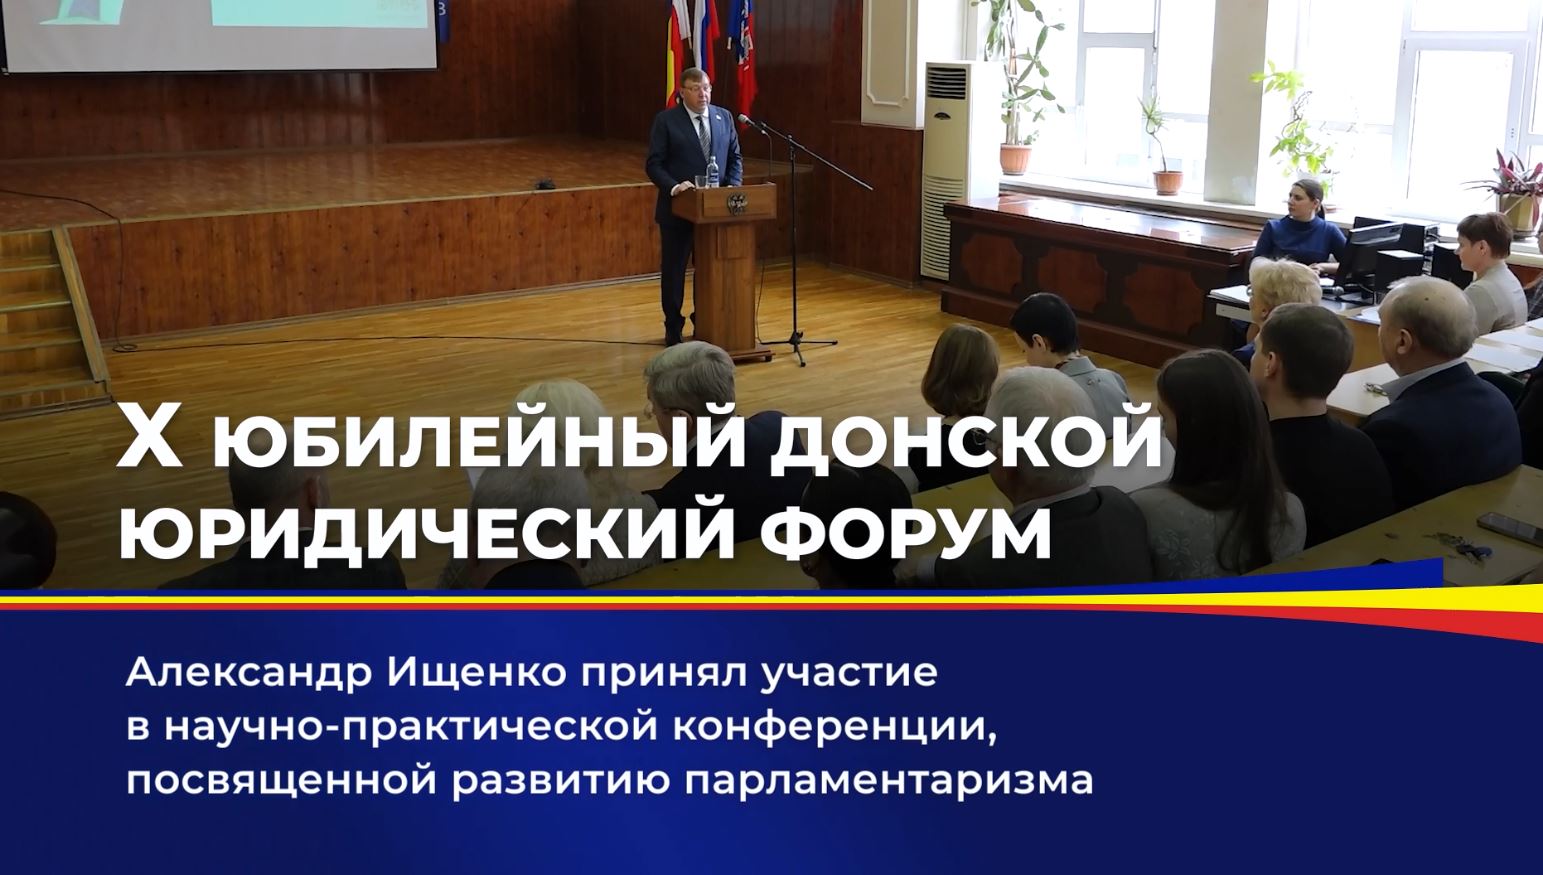 Александр Ищенко принял участие в научно-практической конференции, посвященной развитию парламентаризма